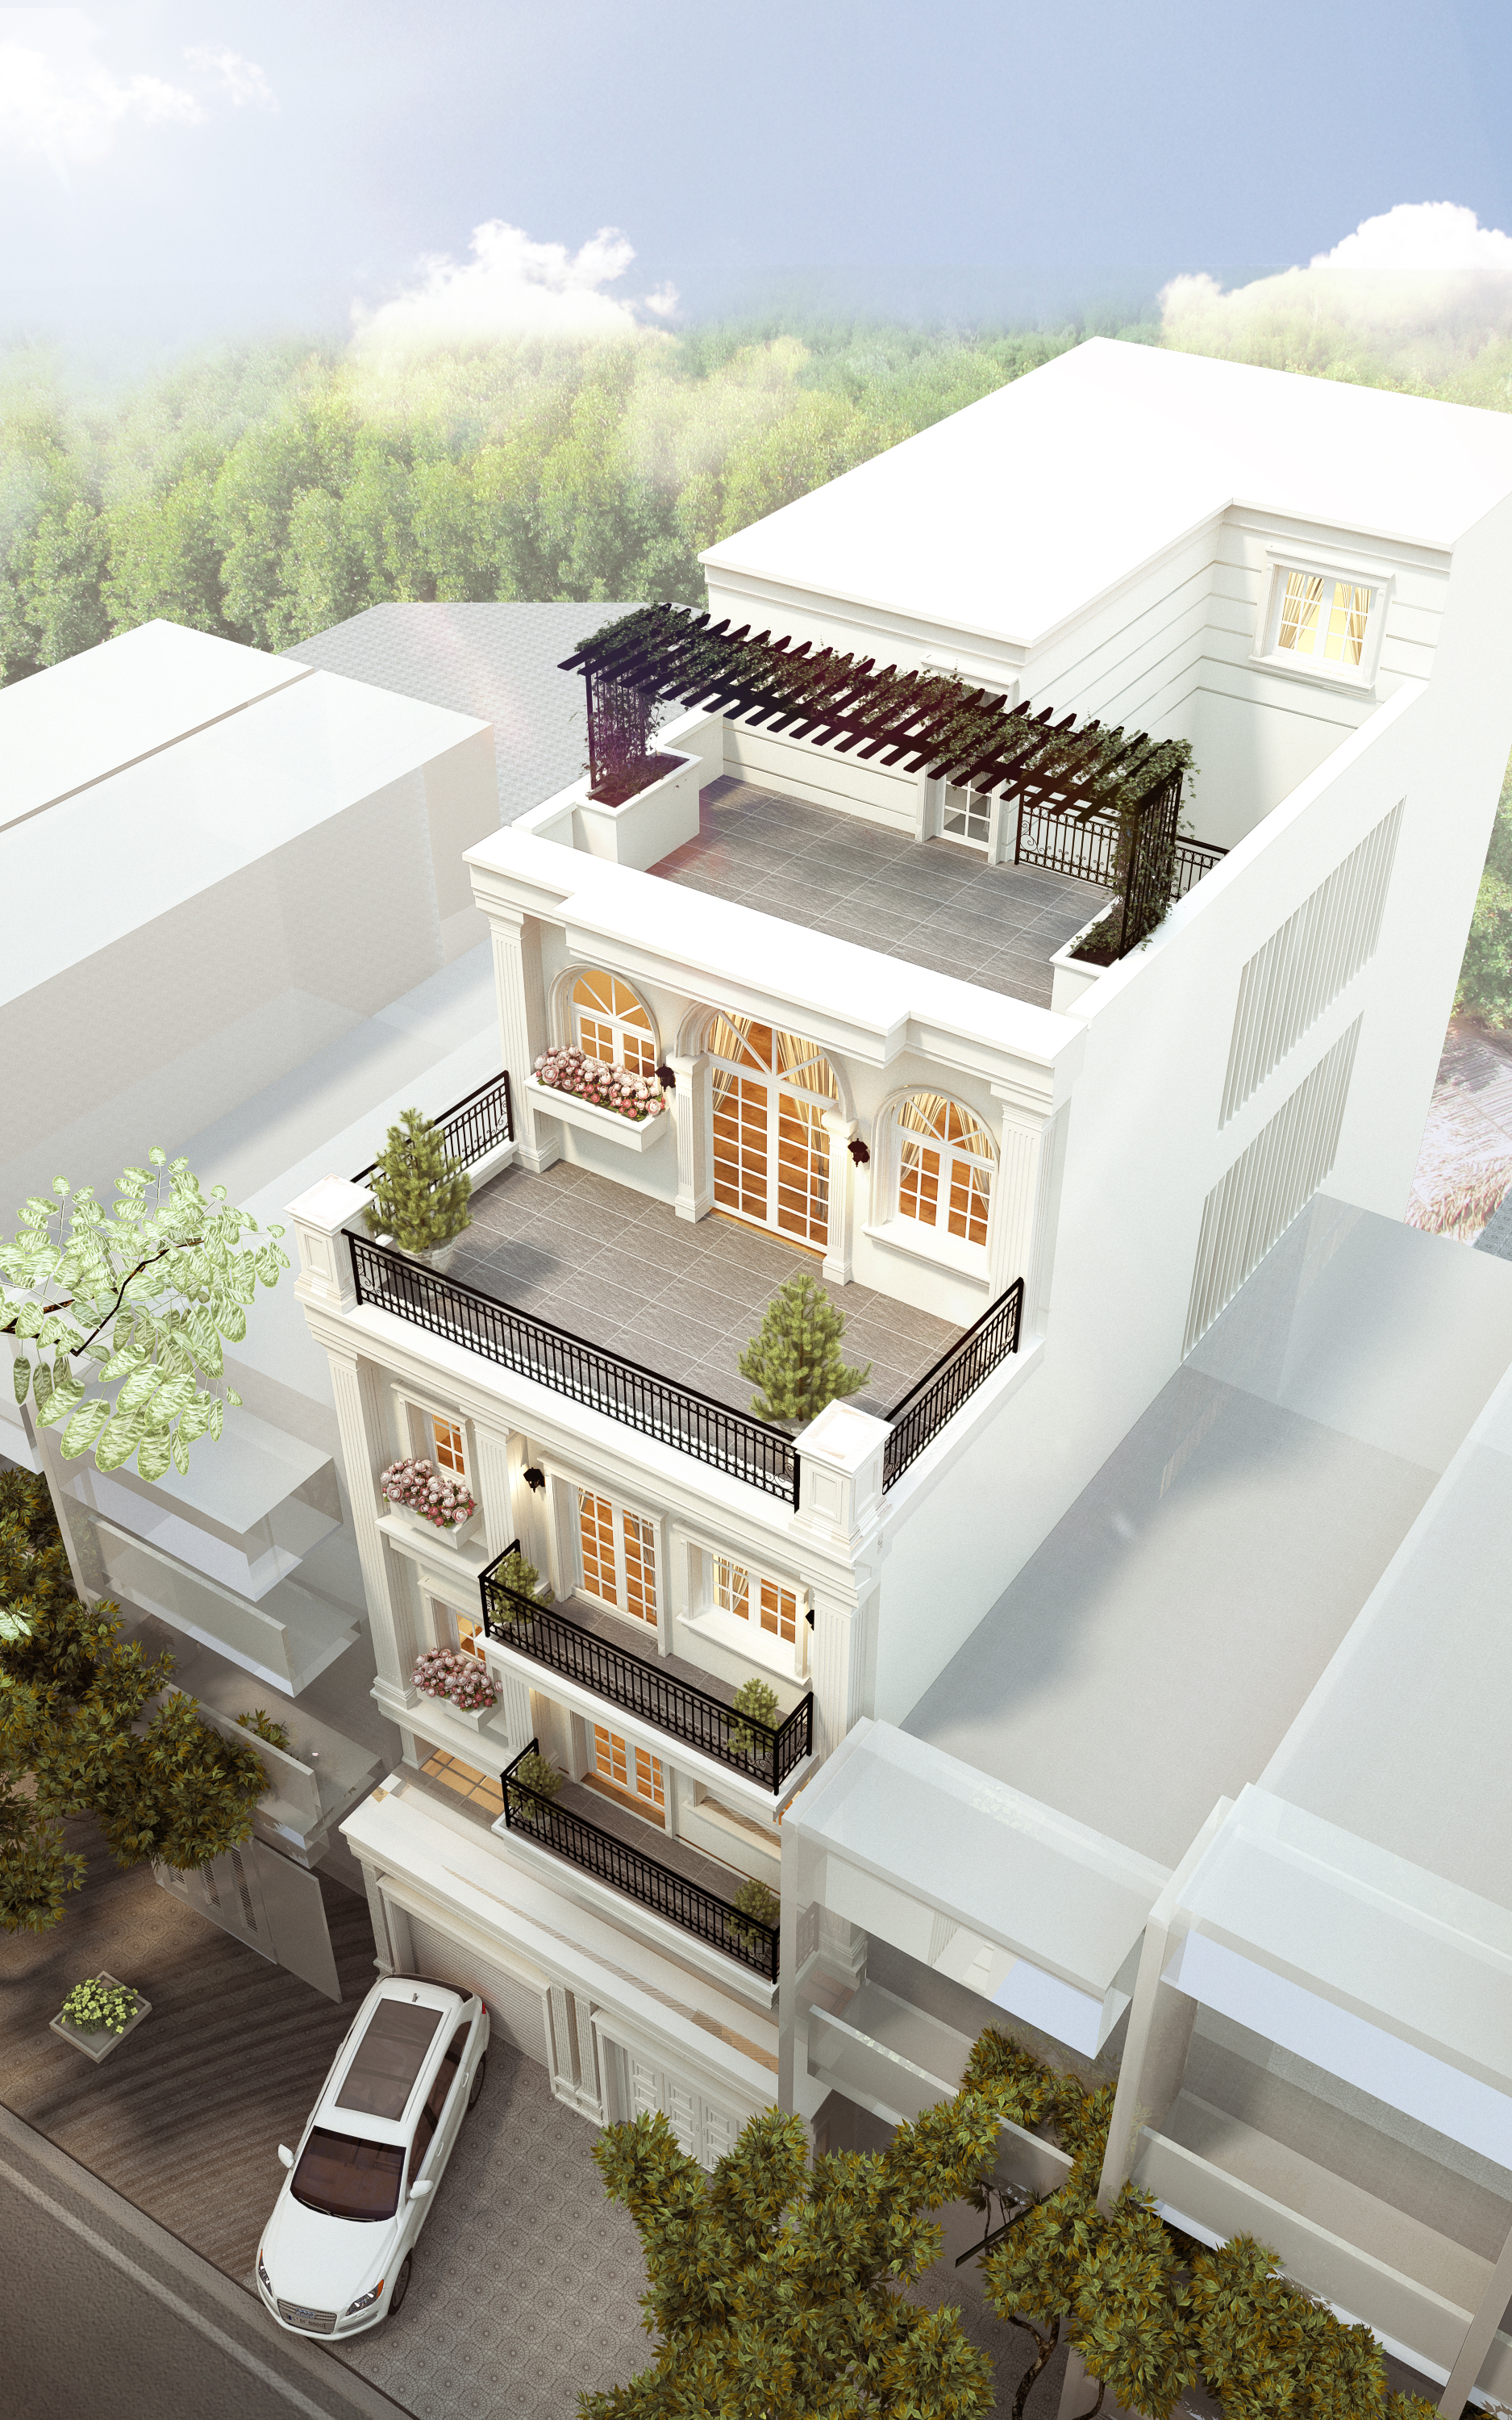 Thiết kế biệt thự 3 tầng mặt phố nhà anh Thức - Bắc Ninh CÔNG TY CỔ PHẦN  KIẾN TRÚC XÂY DỰNG VIỆT HOME